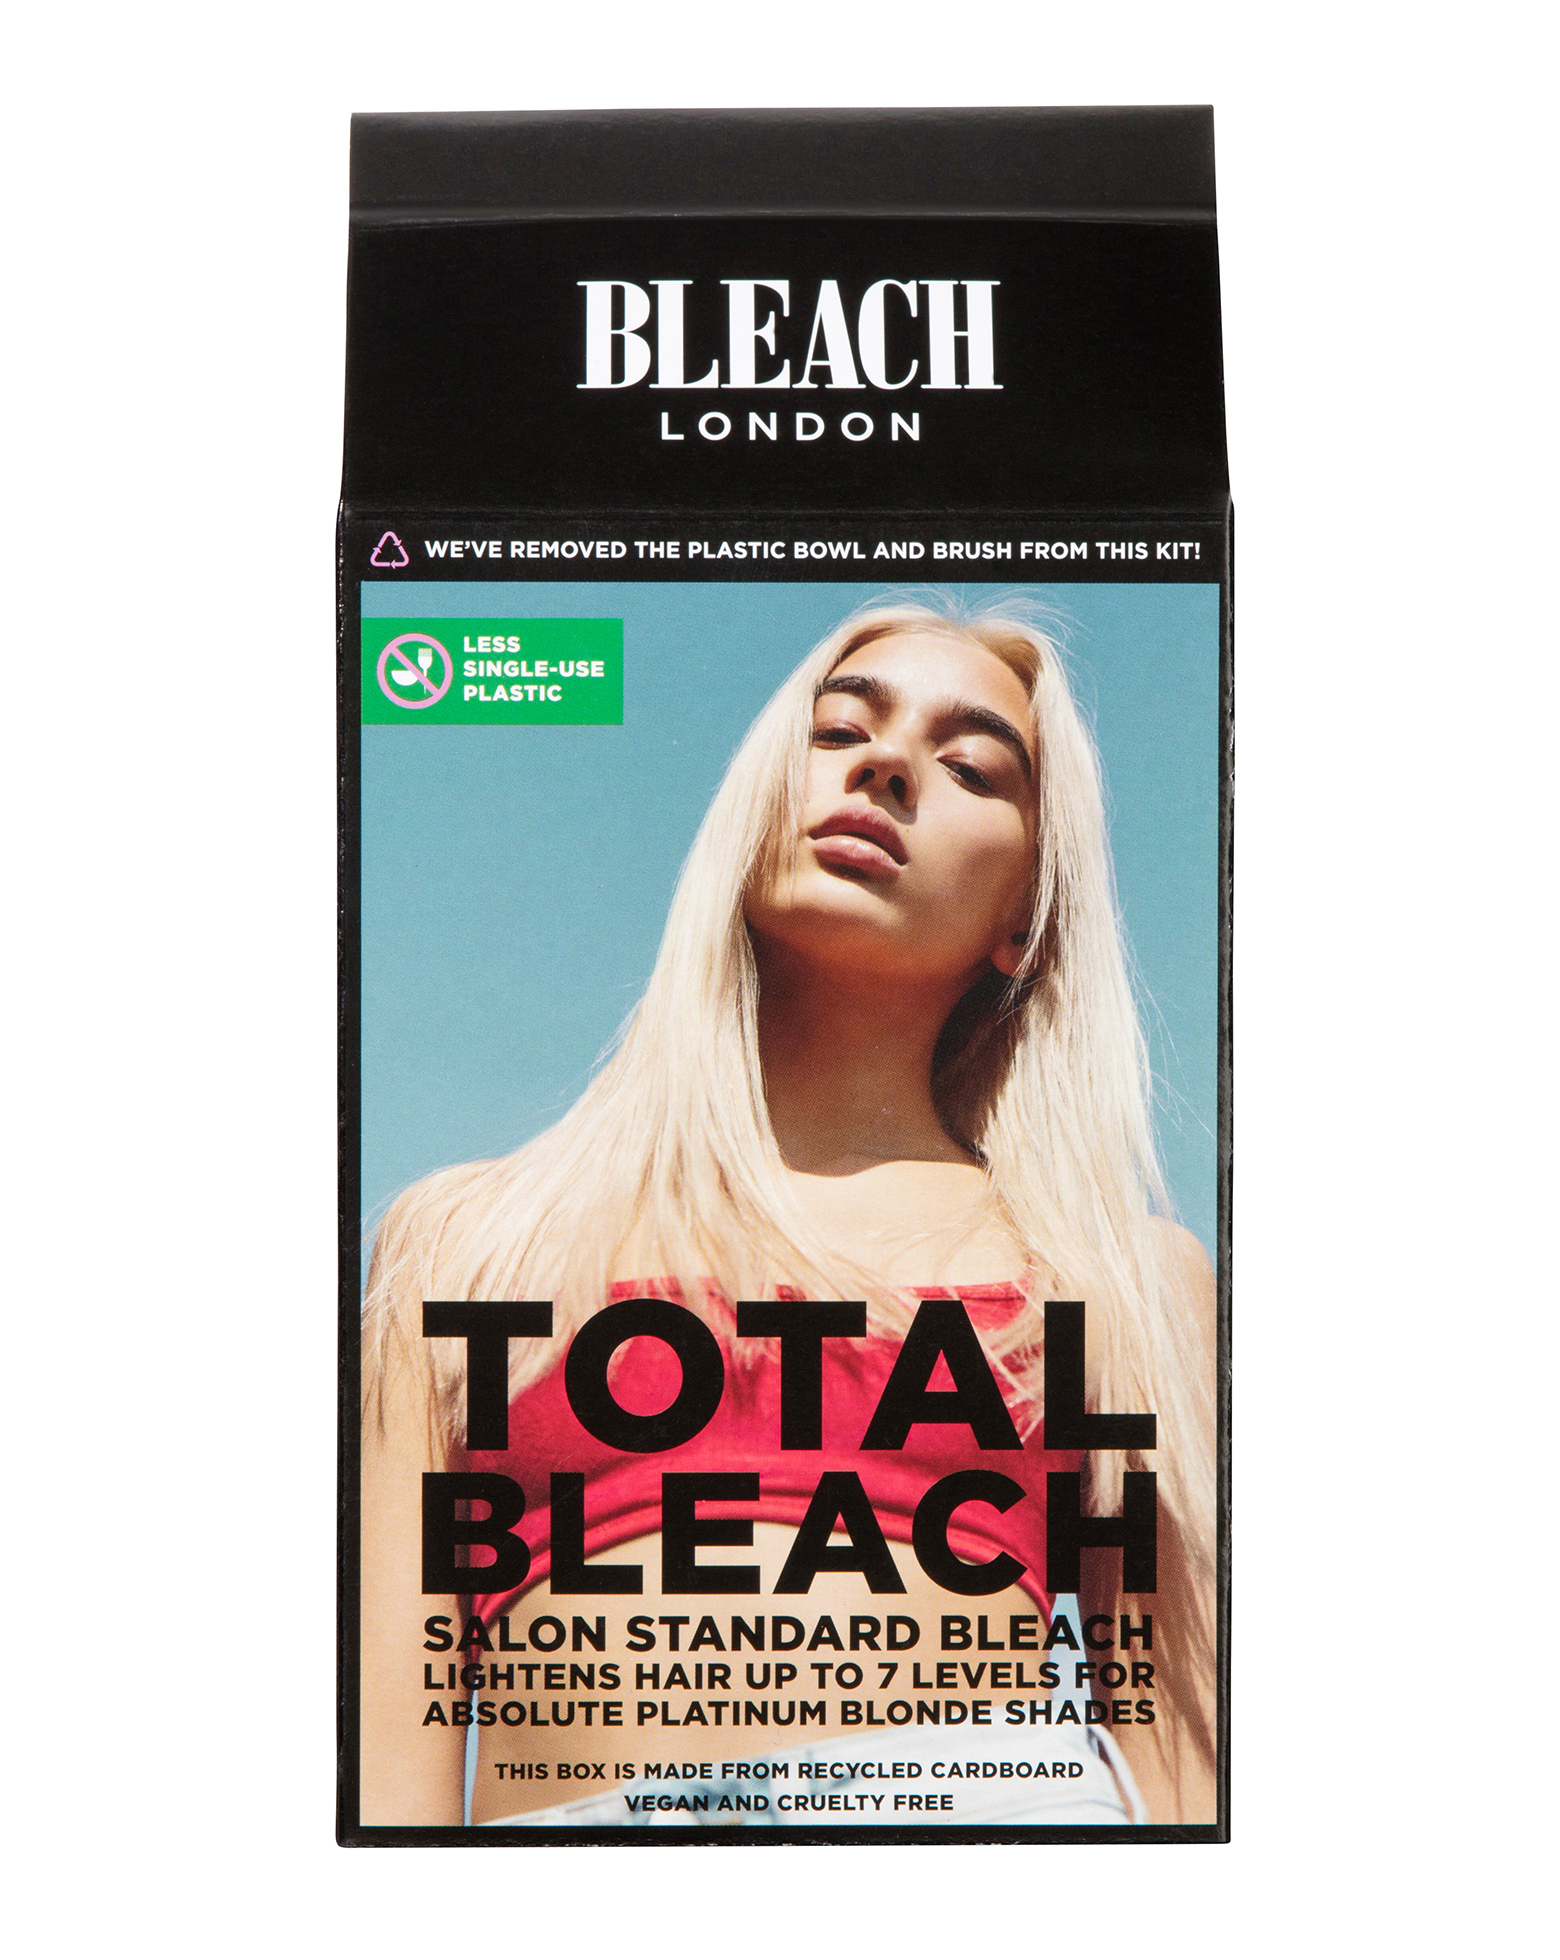 Bleach London - Total Bleach Kit